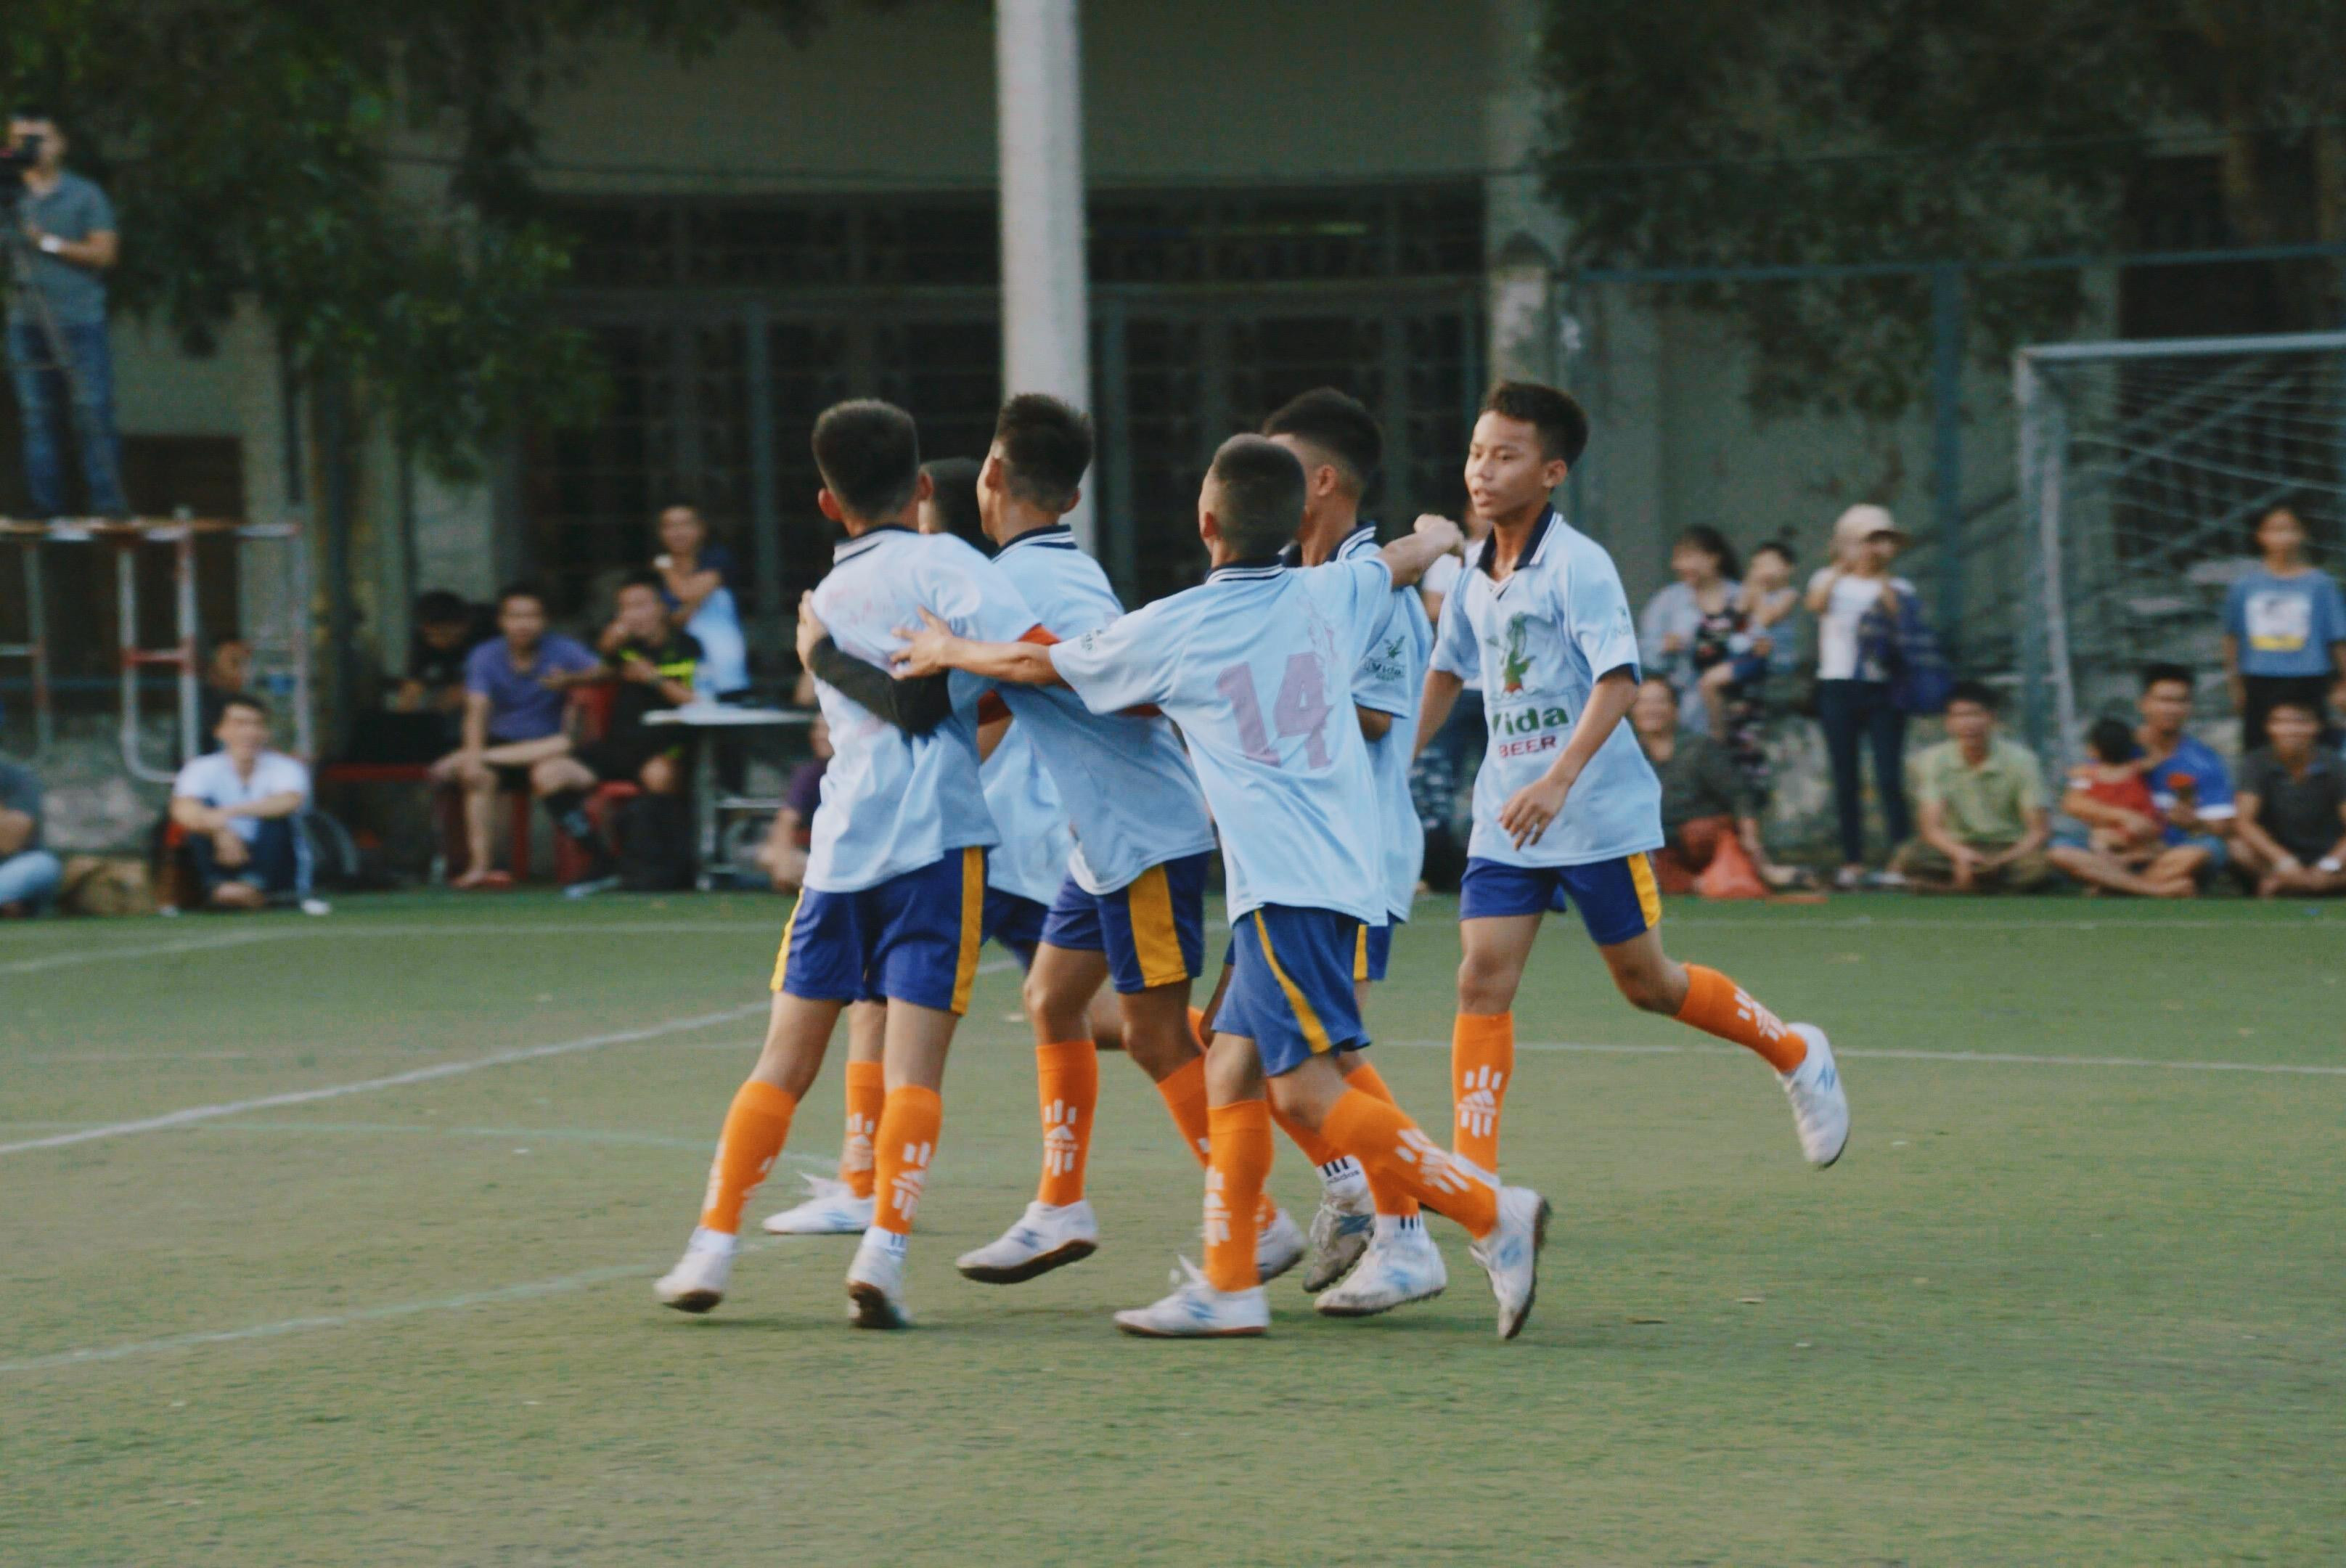 Thiếu niên Yên Thành được đánh giá ngay từ đầu là một trong những đội mạnh nhất mùa giải. Các cầu thủ gây ấn tượng bởi lối chơi kỹ thuật và các pha tấn công có tổ chức. Tuy nhiên nhà đương kim vô địch đã bị đánh bại ở vòng tứ kết bởi đội Thiếu niên Tân Kỳ vào sáng 15/6 với tỉ số 1-0.